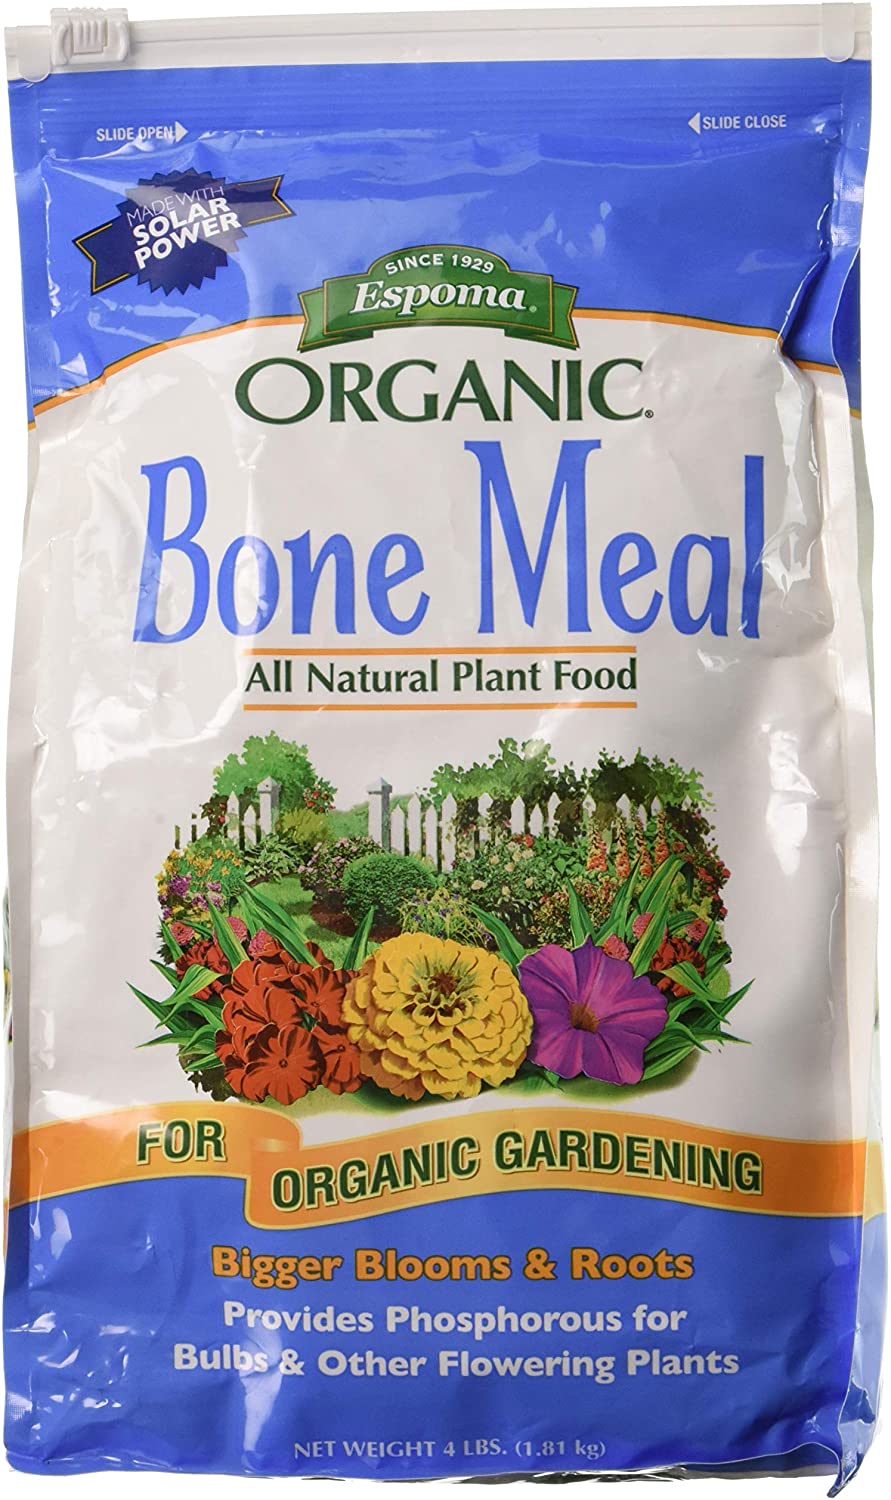 espoma bone meal fertilizer organic